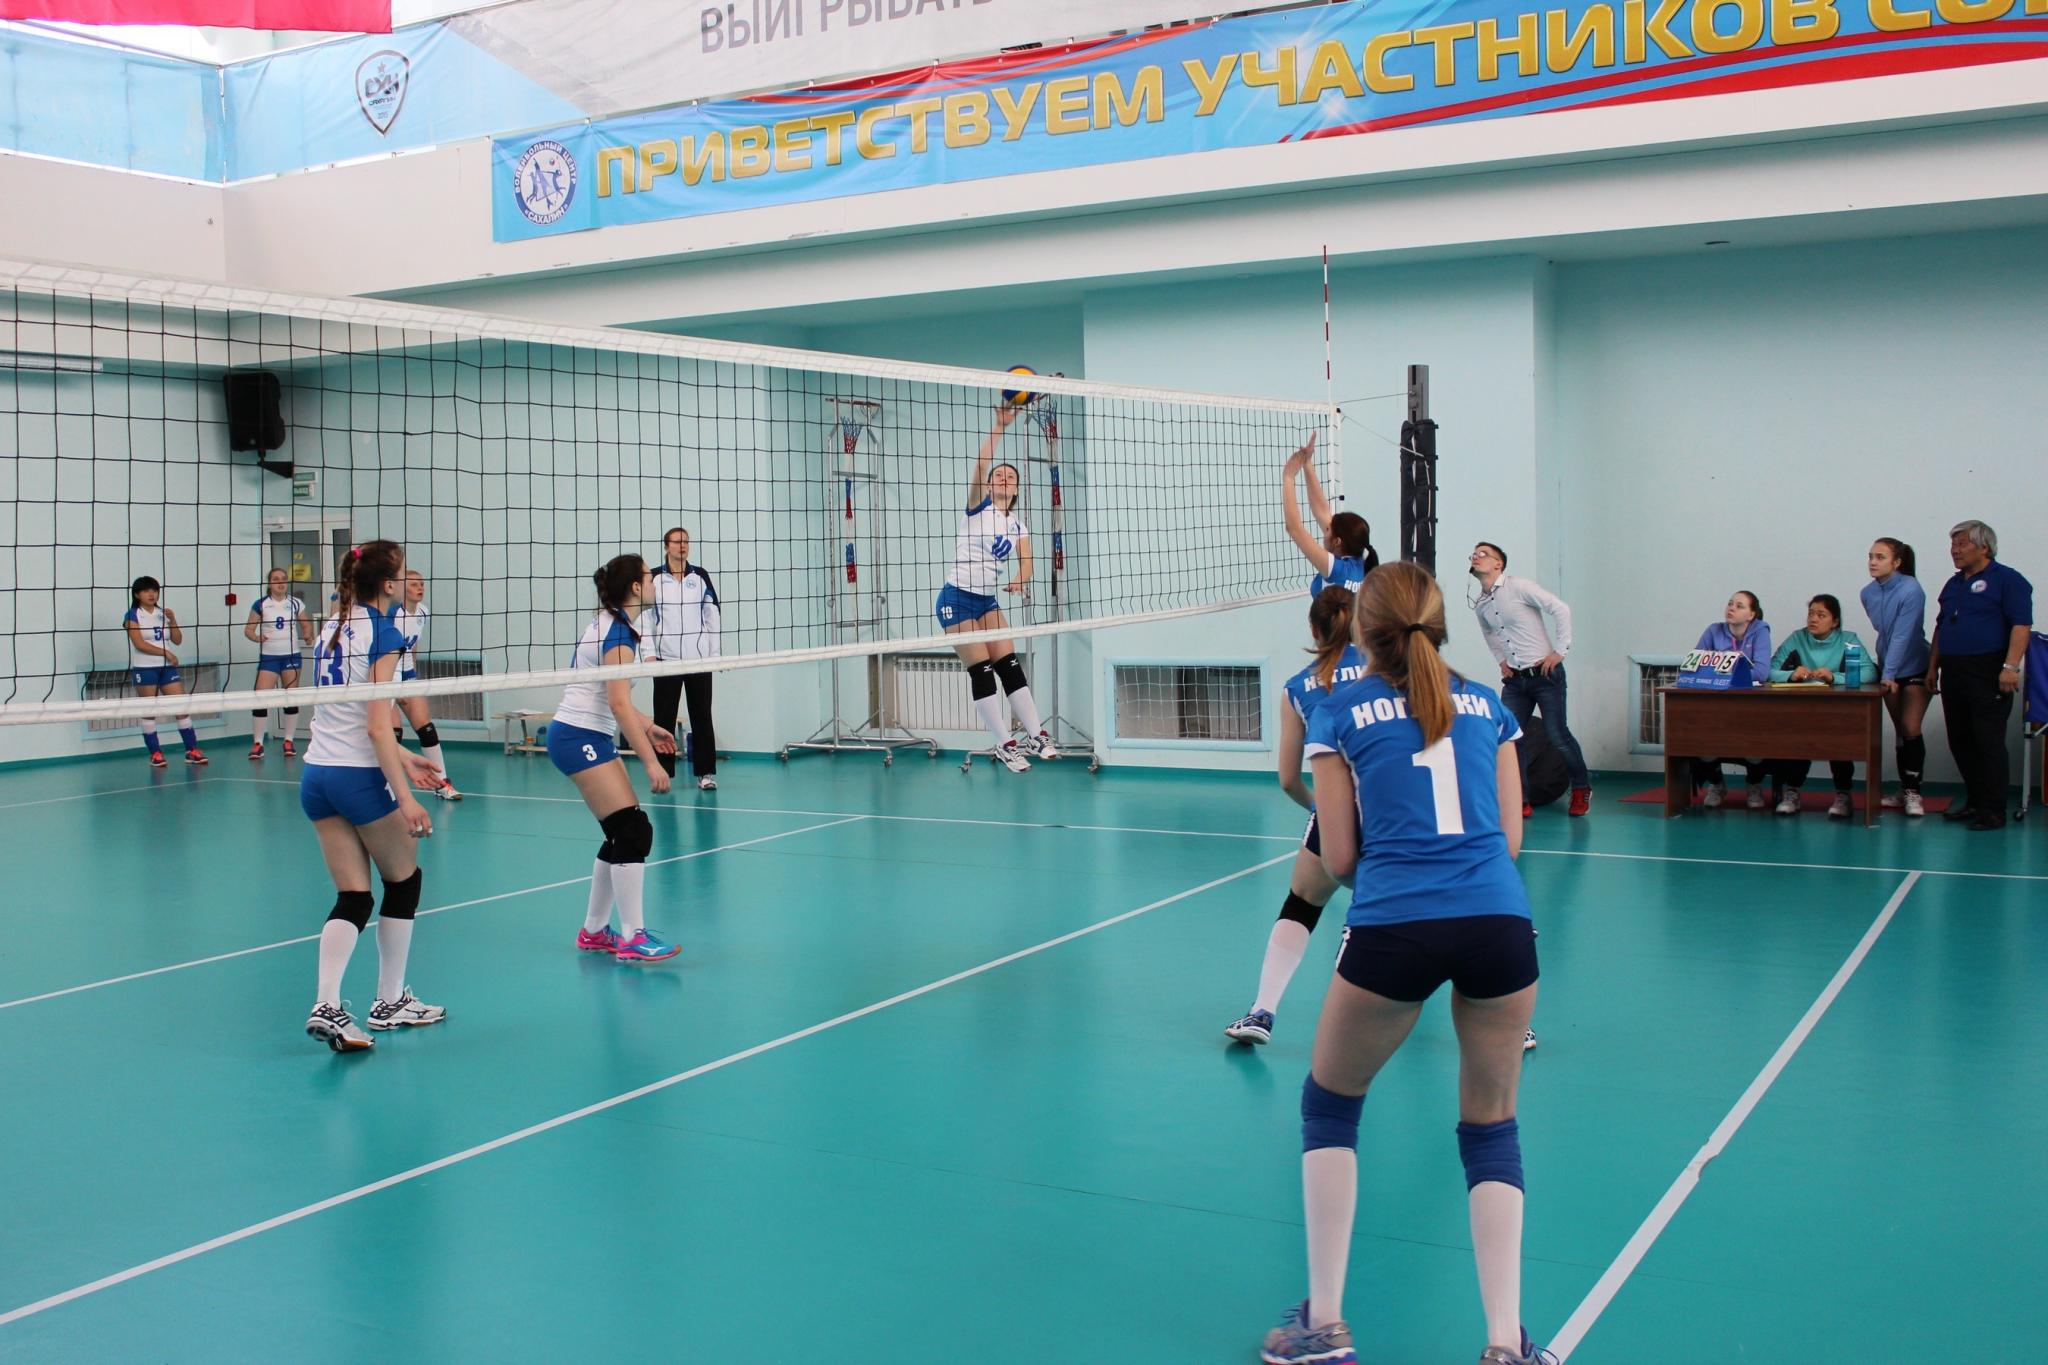 Соревнования по волейболу среди девушек. Волейбольные площадки в Южно Сахалинске.